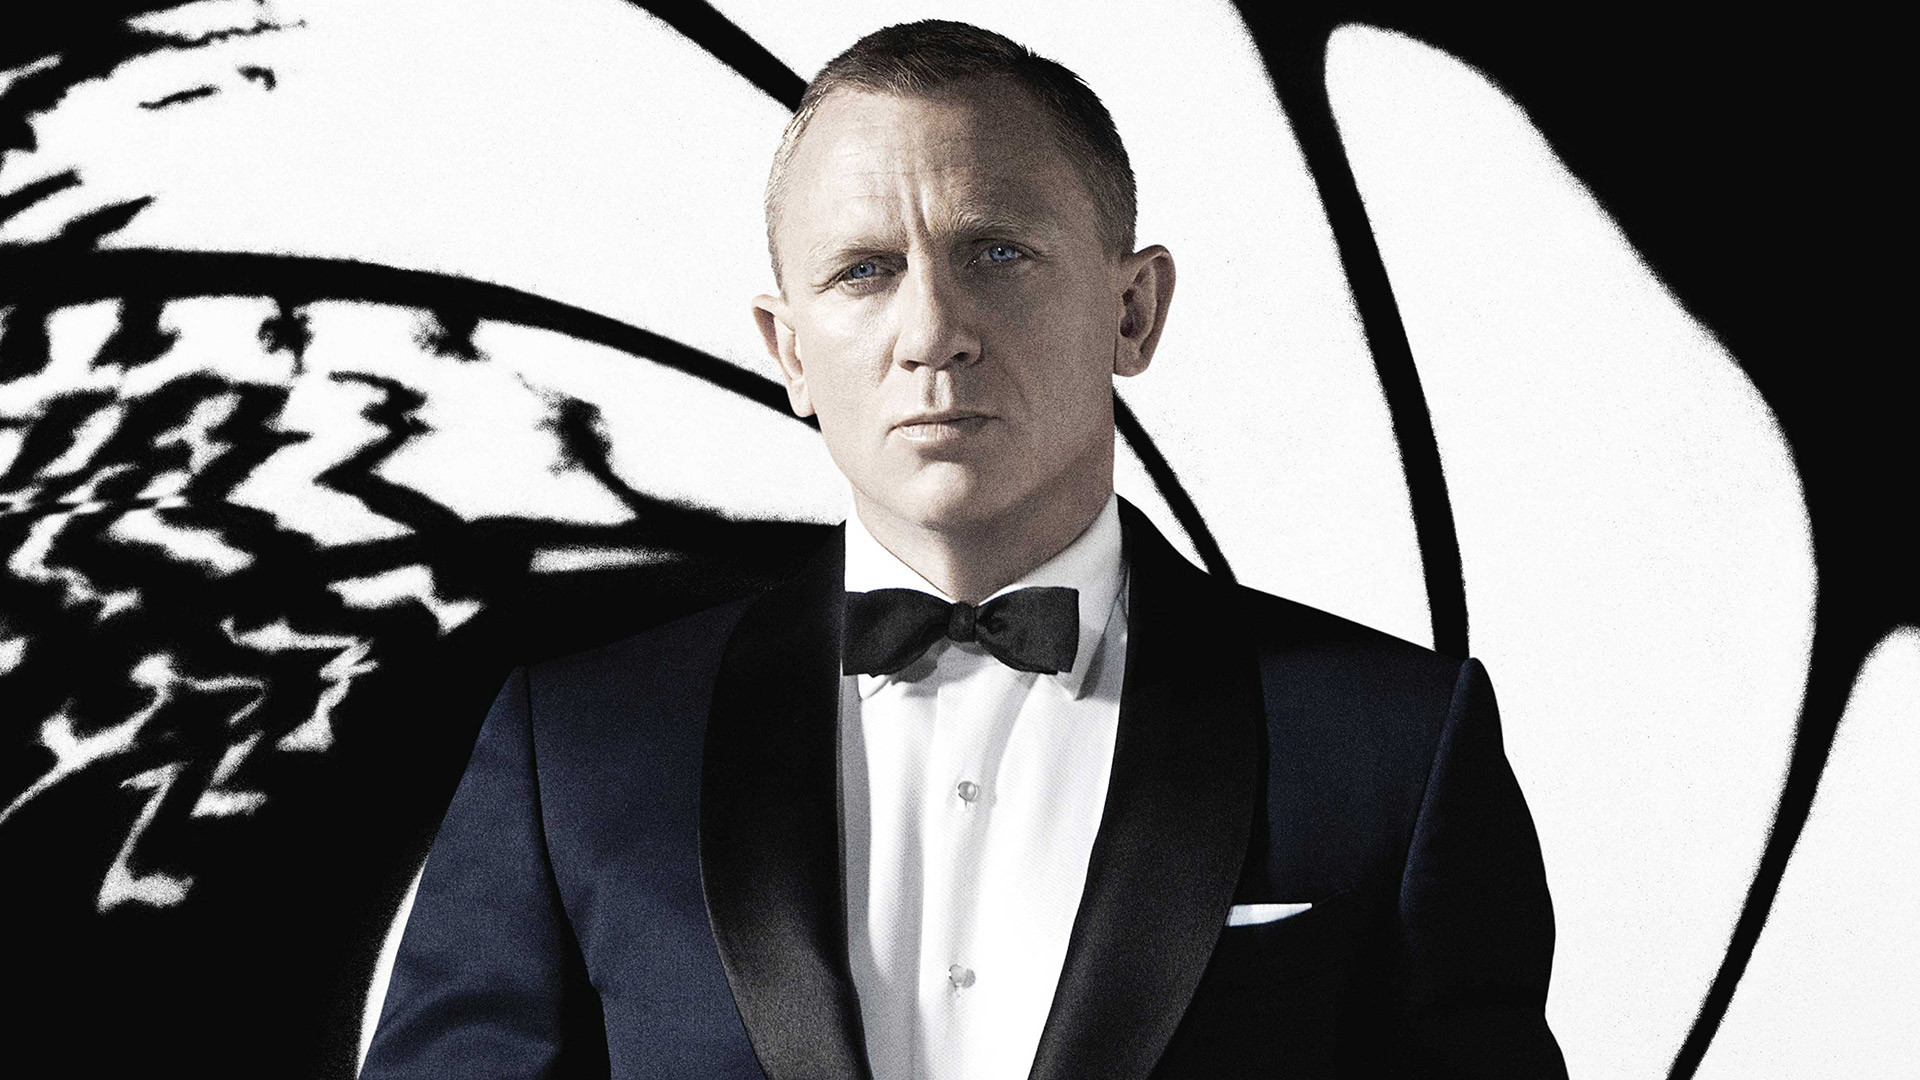 7680x4320 Daniel Craig As James Bond Wallpaper 8k Wal - vrogue.co